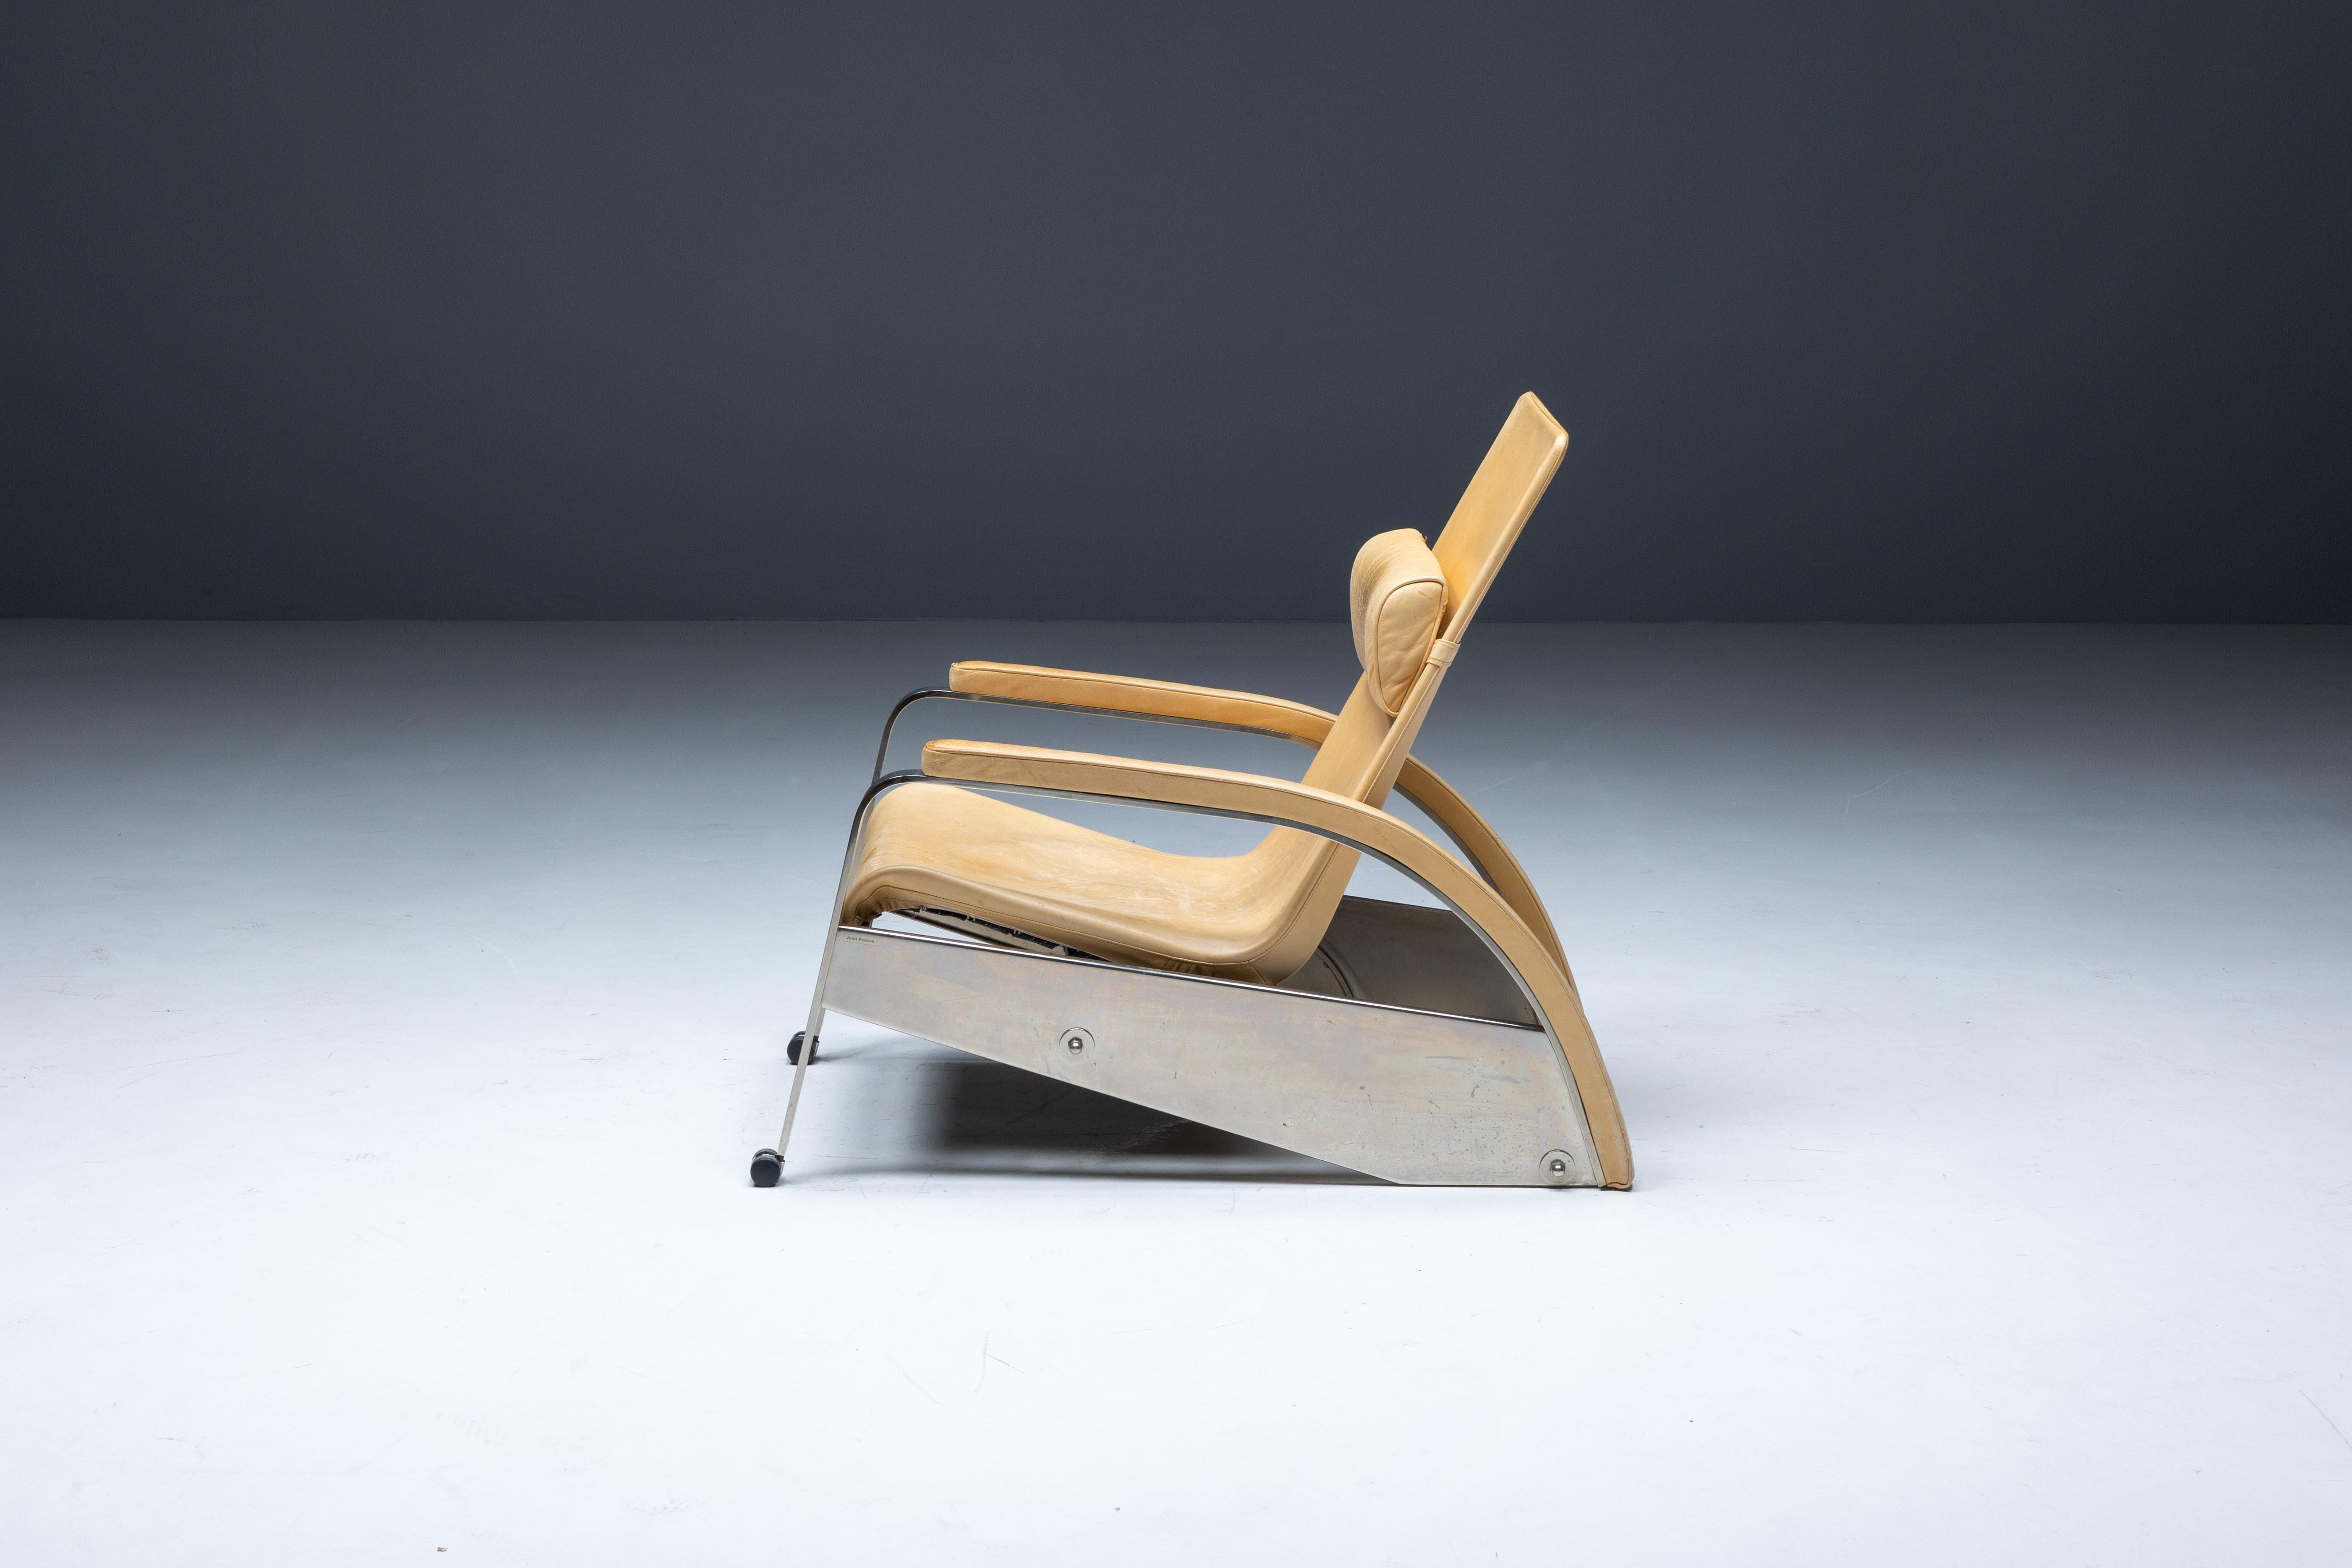 La chaise longue Grand Repos D80 de Jean Prouvé, un meuble intemporel qui incarne l'essence du modernisme et du design industriel. Conçue à l'origine entre 1928 et 1930, cette chaise emblématique témoigne de la maîtrise de Prouvé en tant